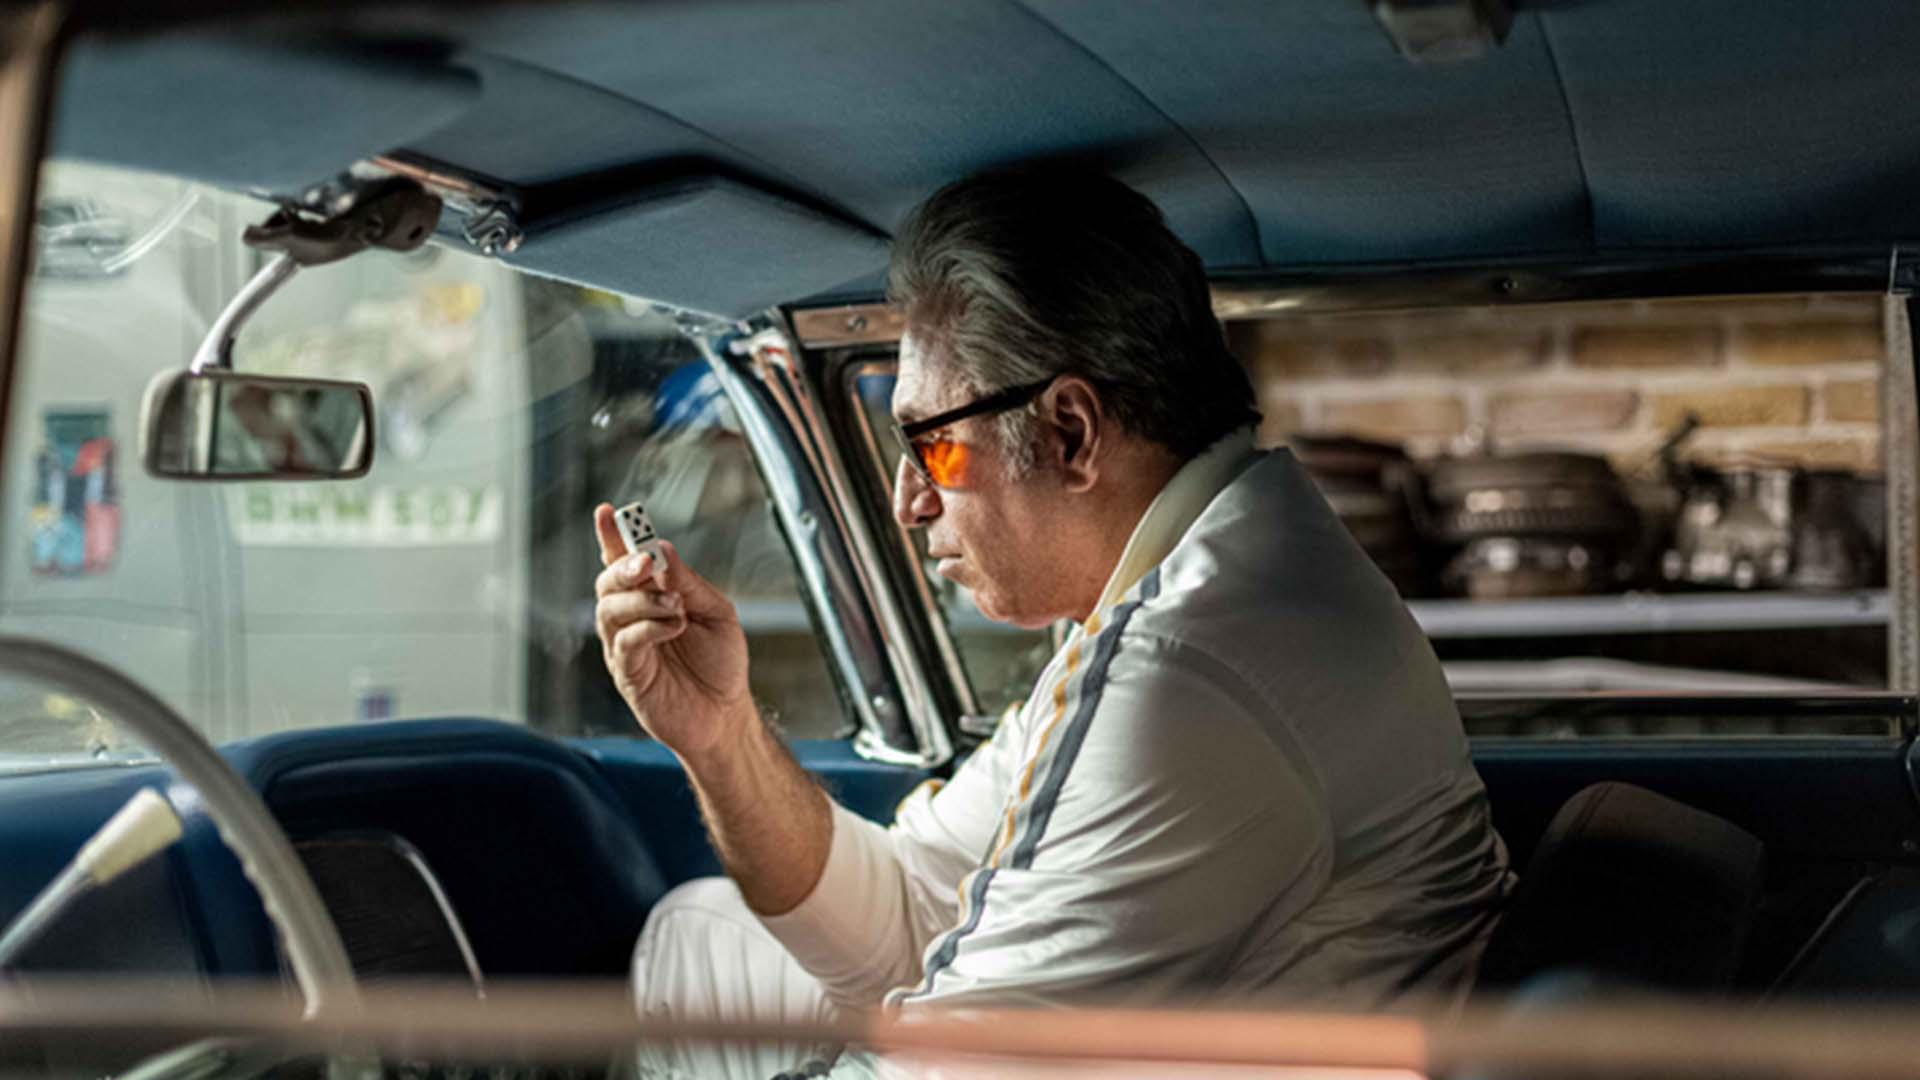 حمید فرخ نژاد در نقش پاپ نشسته در اتومبیل در سریال میدان سرخ